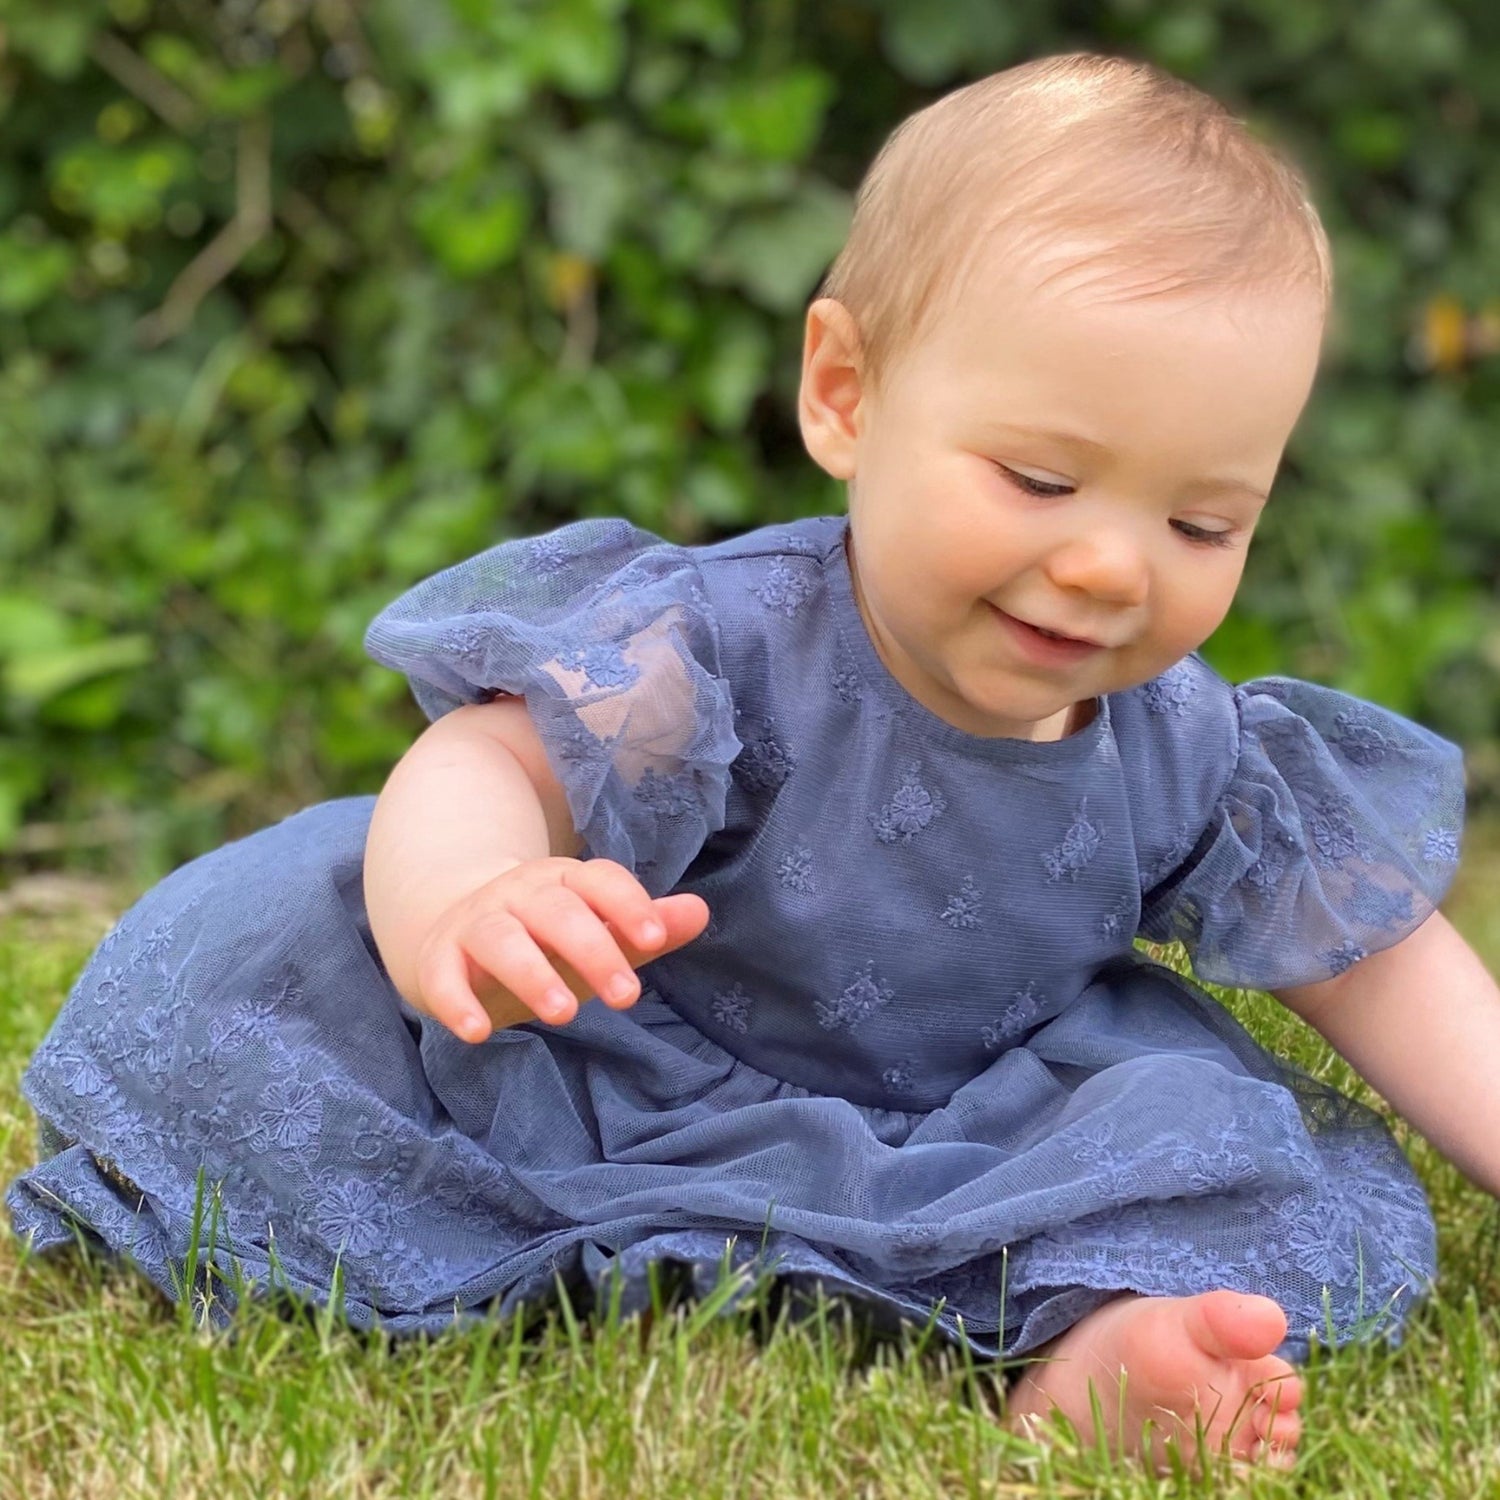 Baby wearing blue lace dress in garden